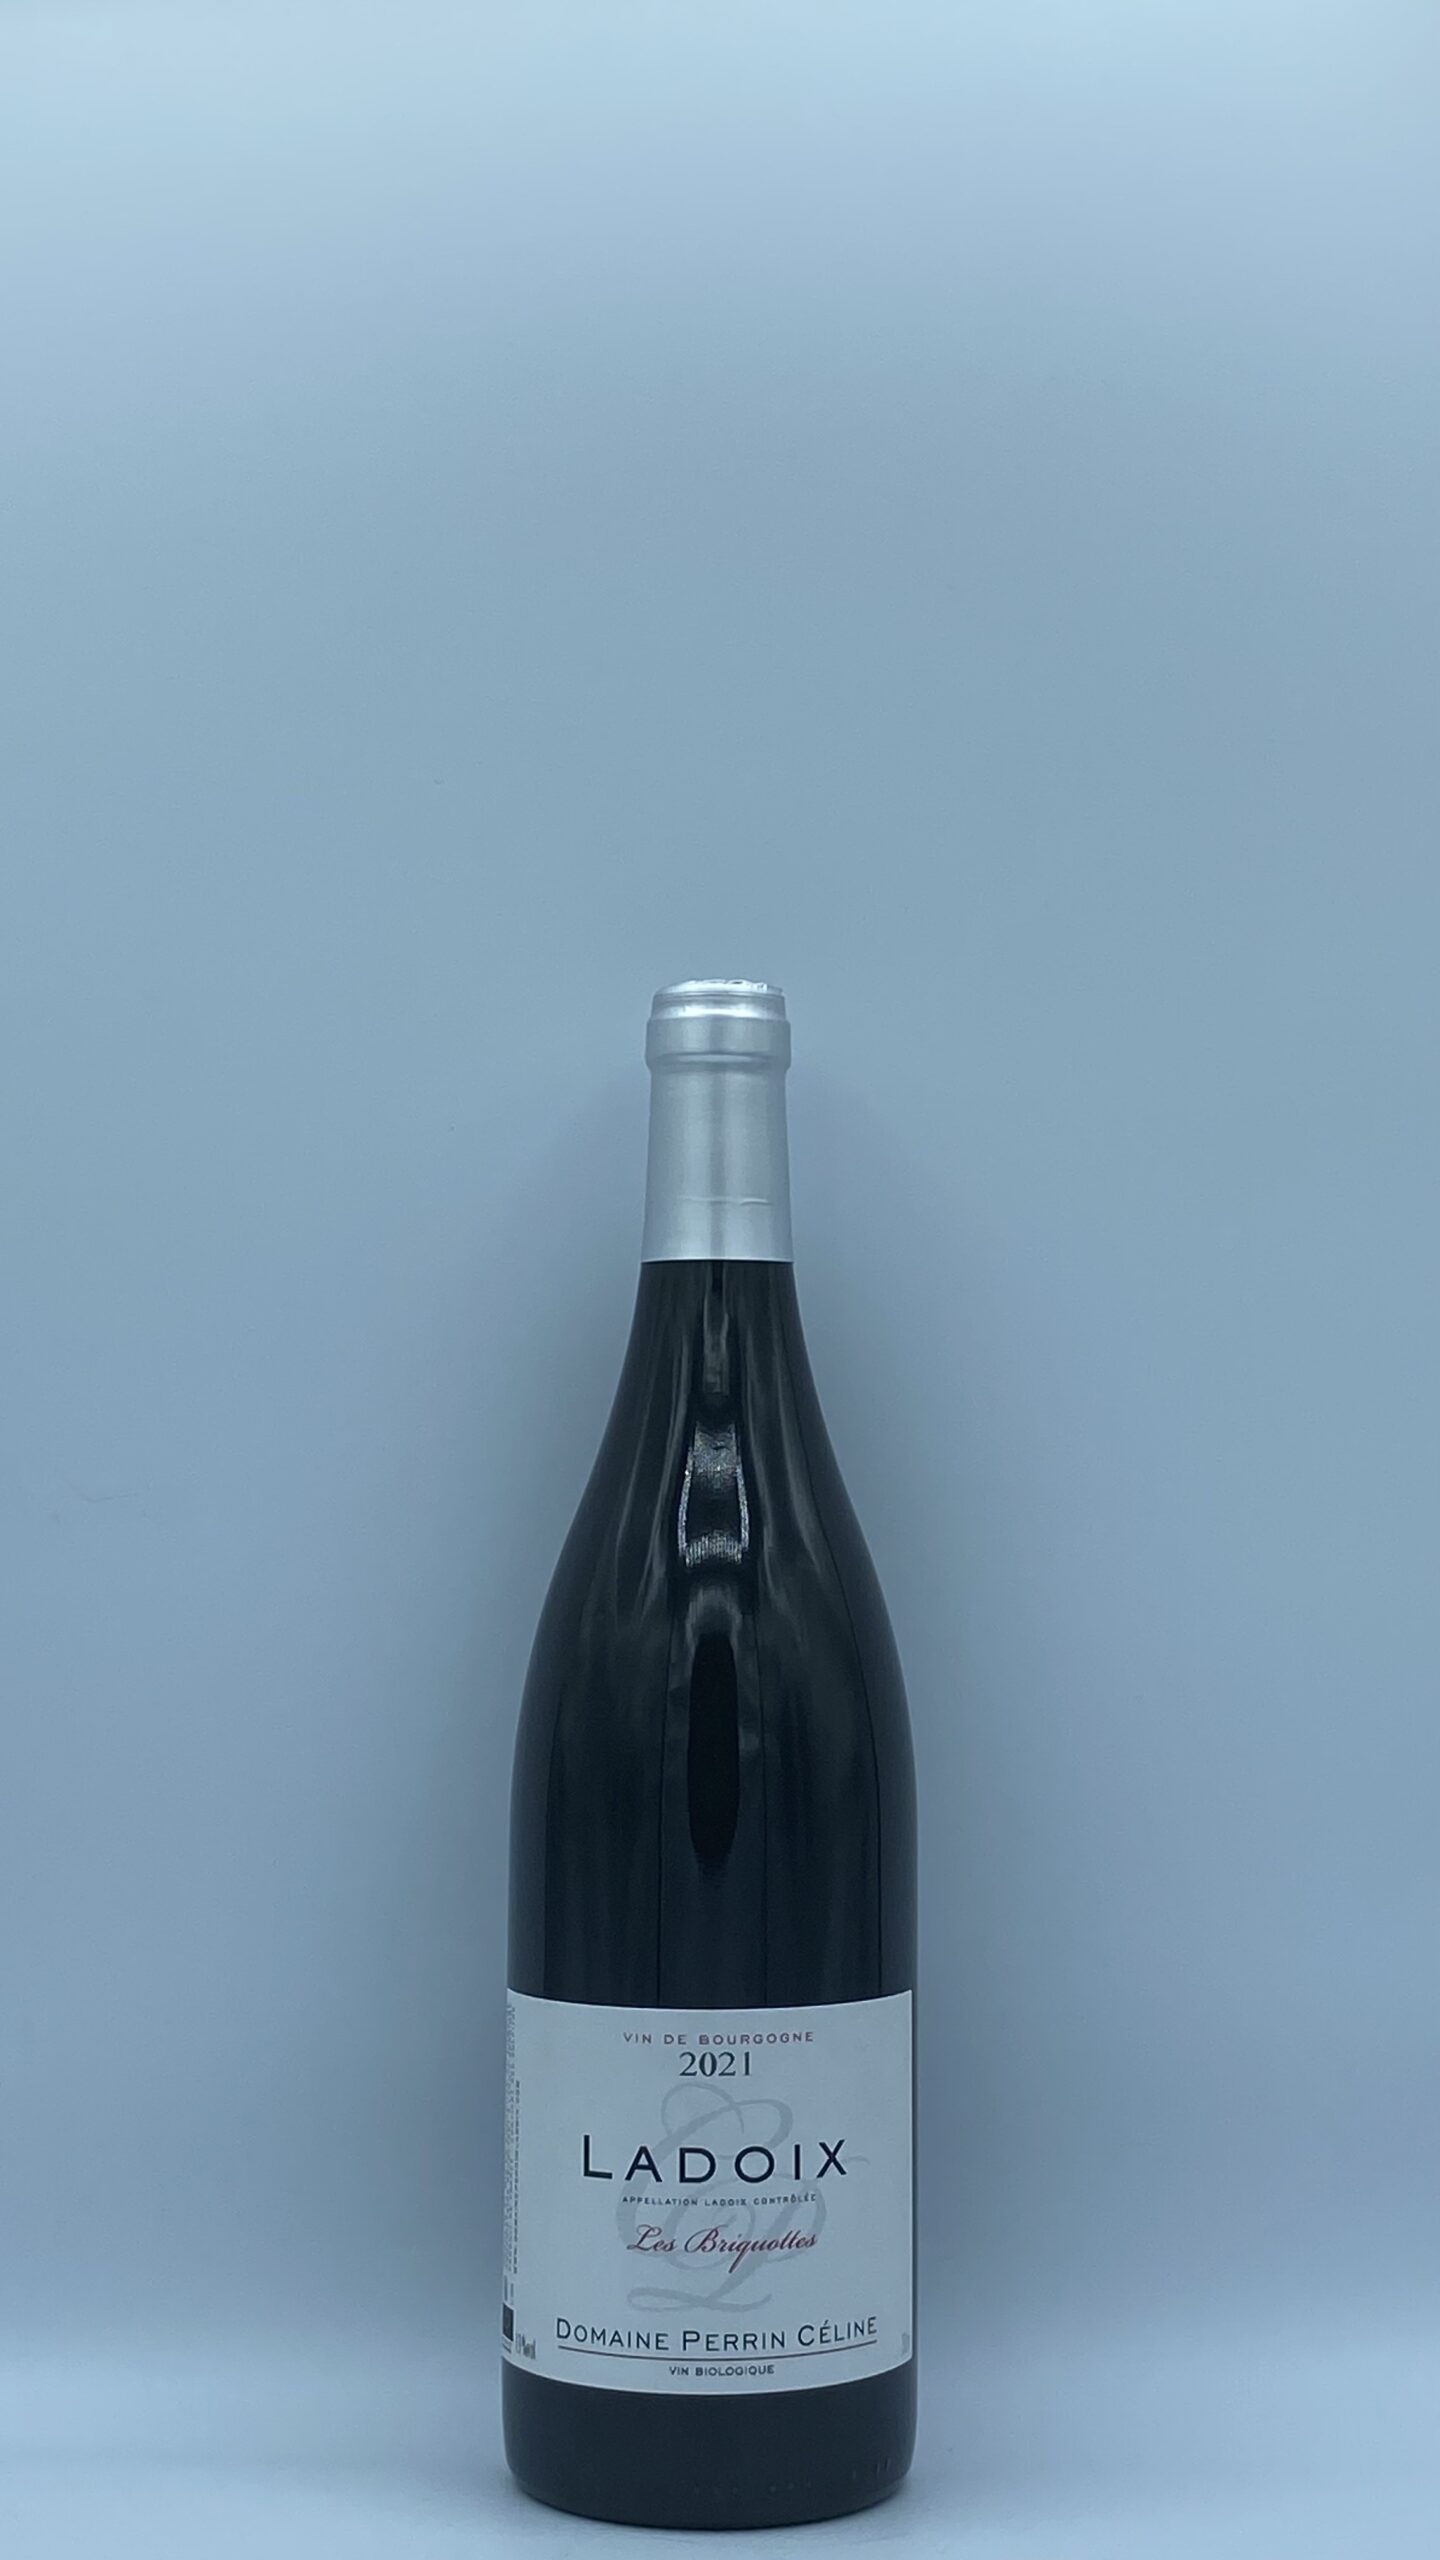 Bourgogne Ladoix “Les Briquottes” 2021 Domaine Céline Perrin